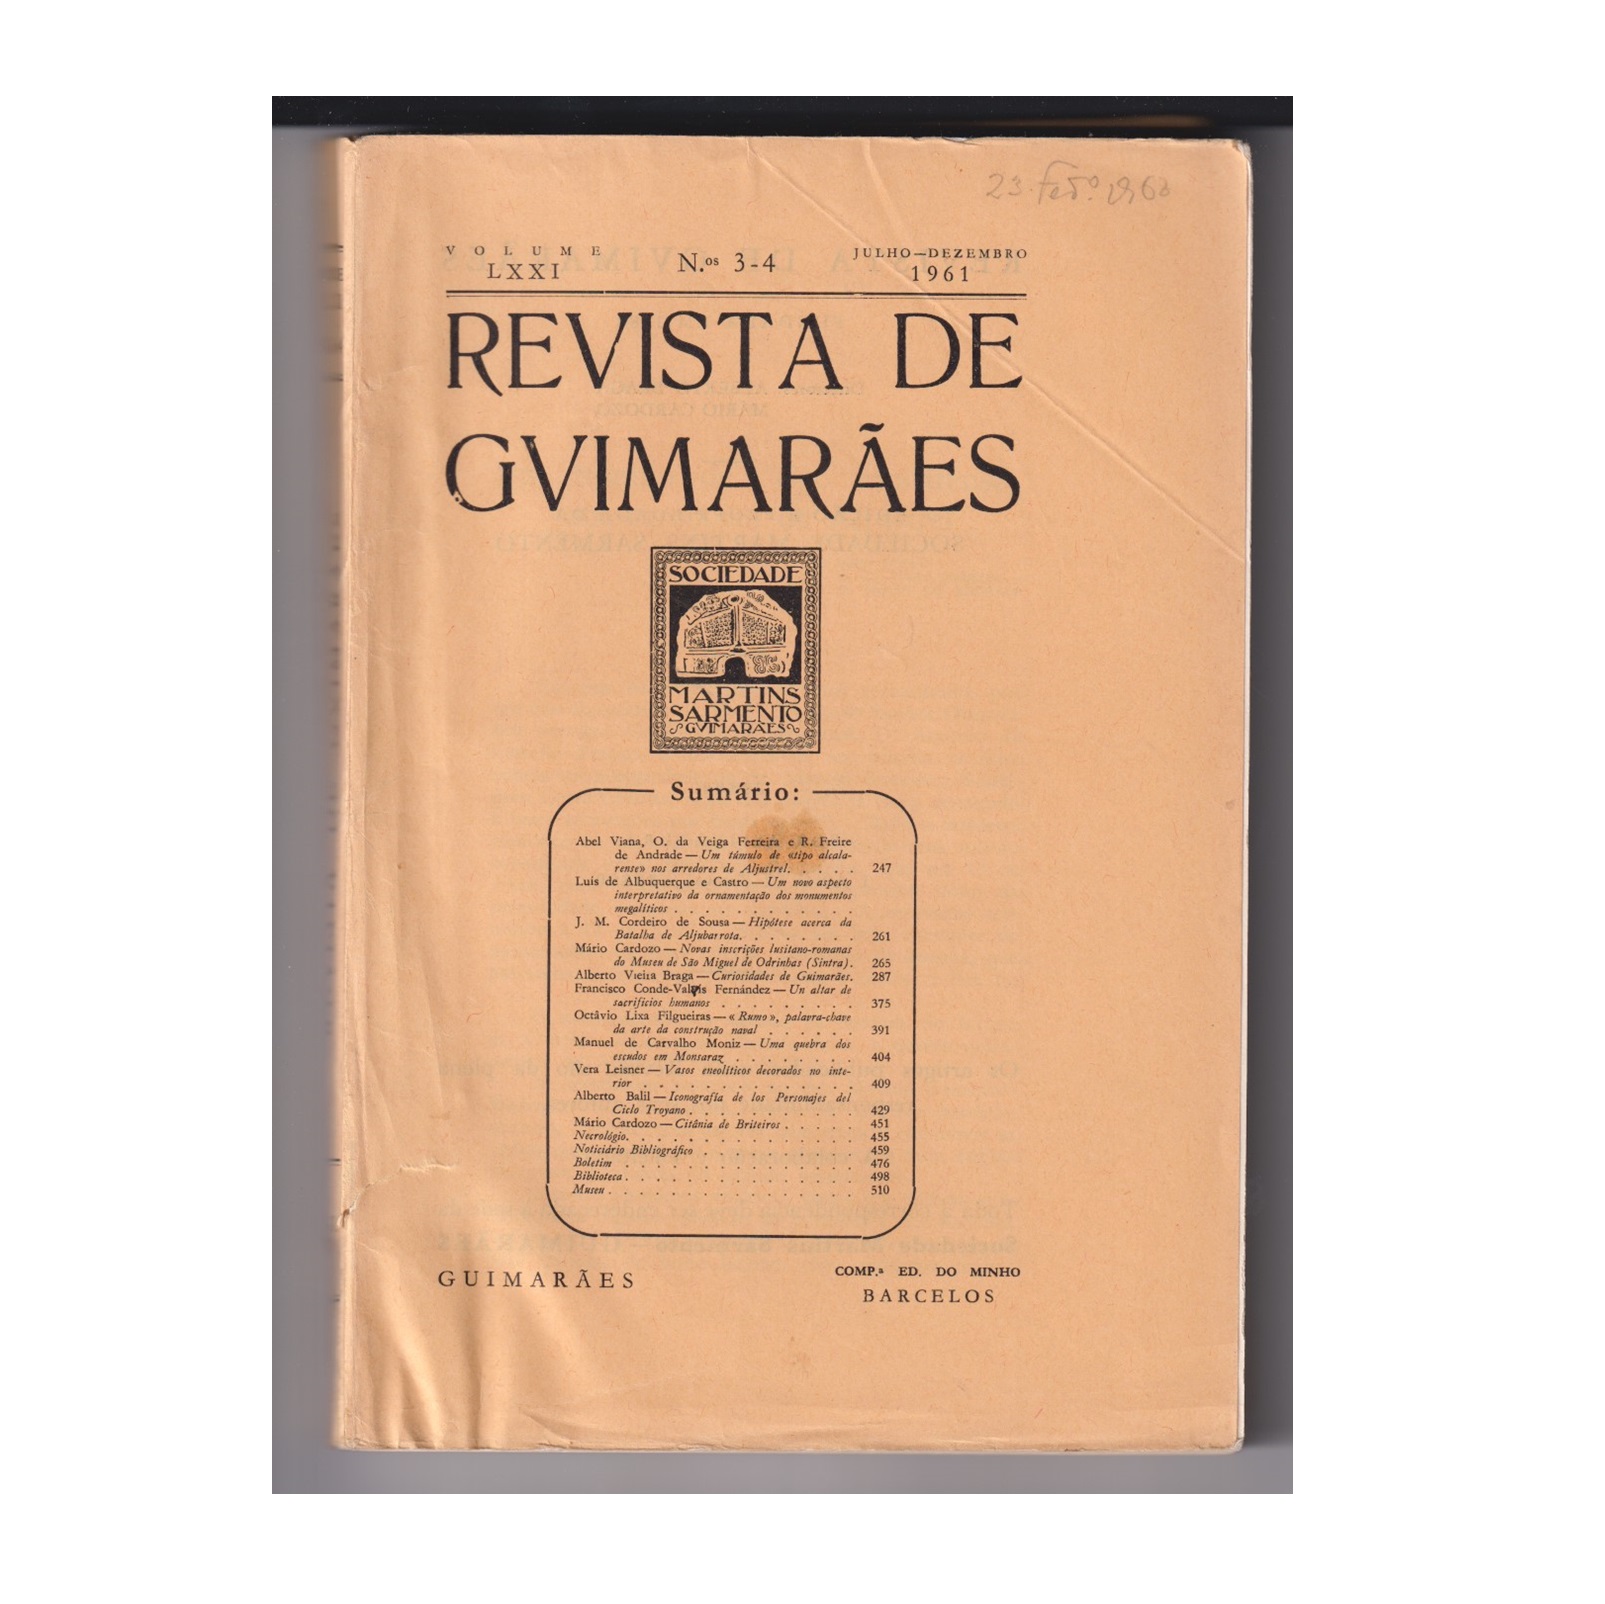 REVISTA DE GUIMARÃES. VOL. LXXI. N.º 3-4, 1961